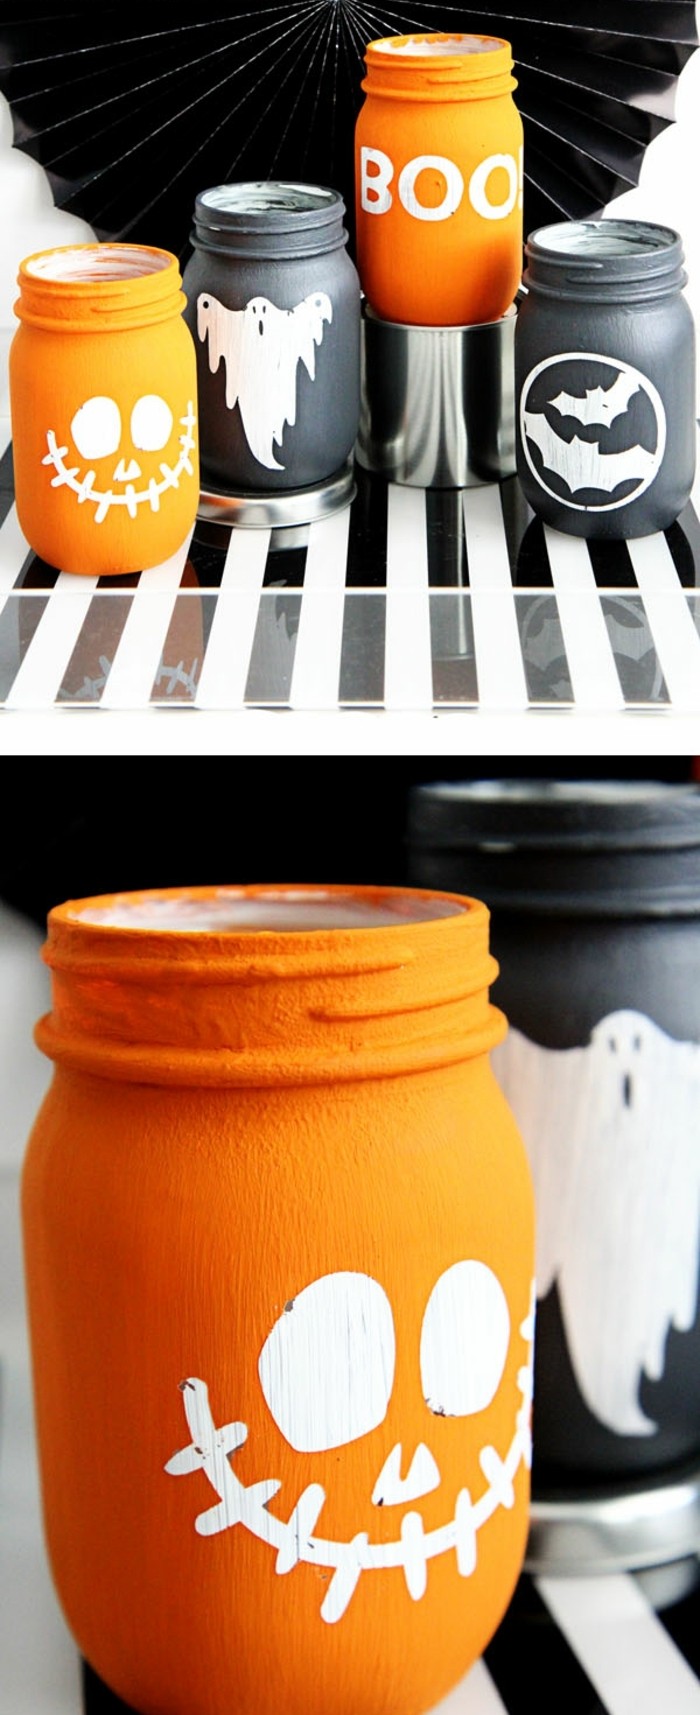 décoration-pot-de-confiture-inspiration-halloween-bocaux-peints-en-noir-et-orange